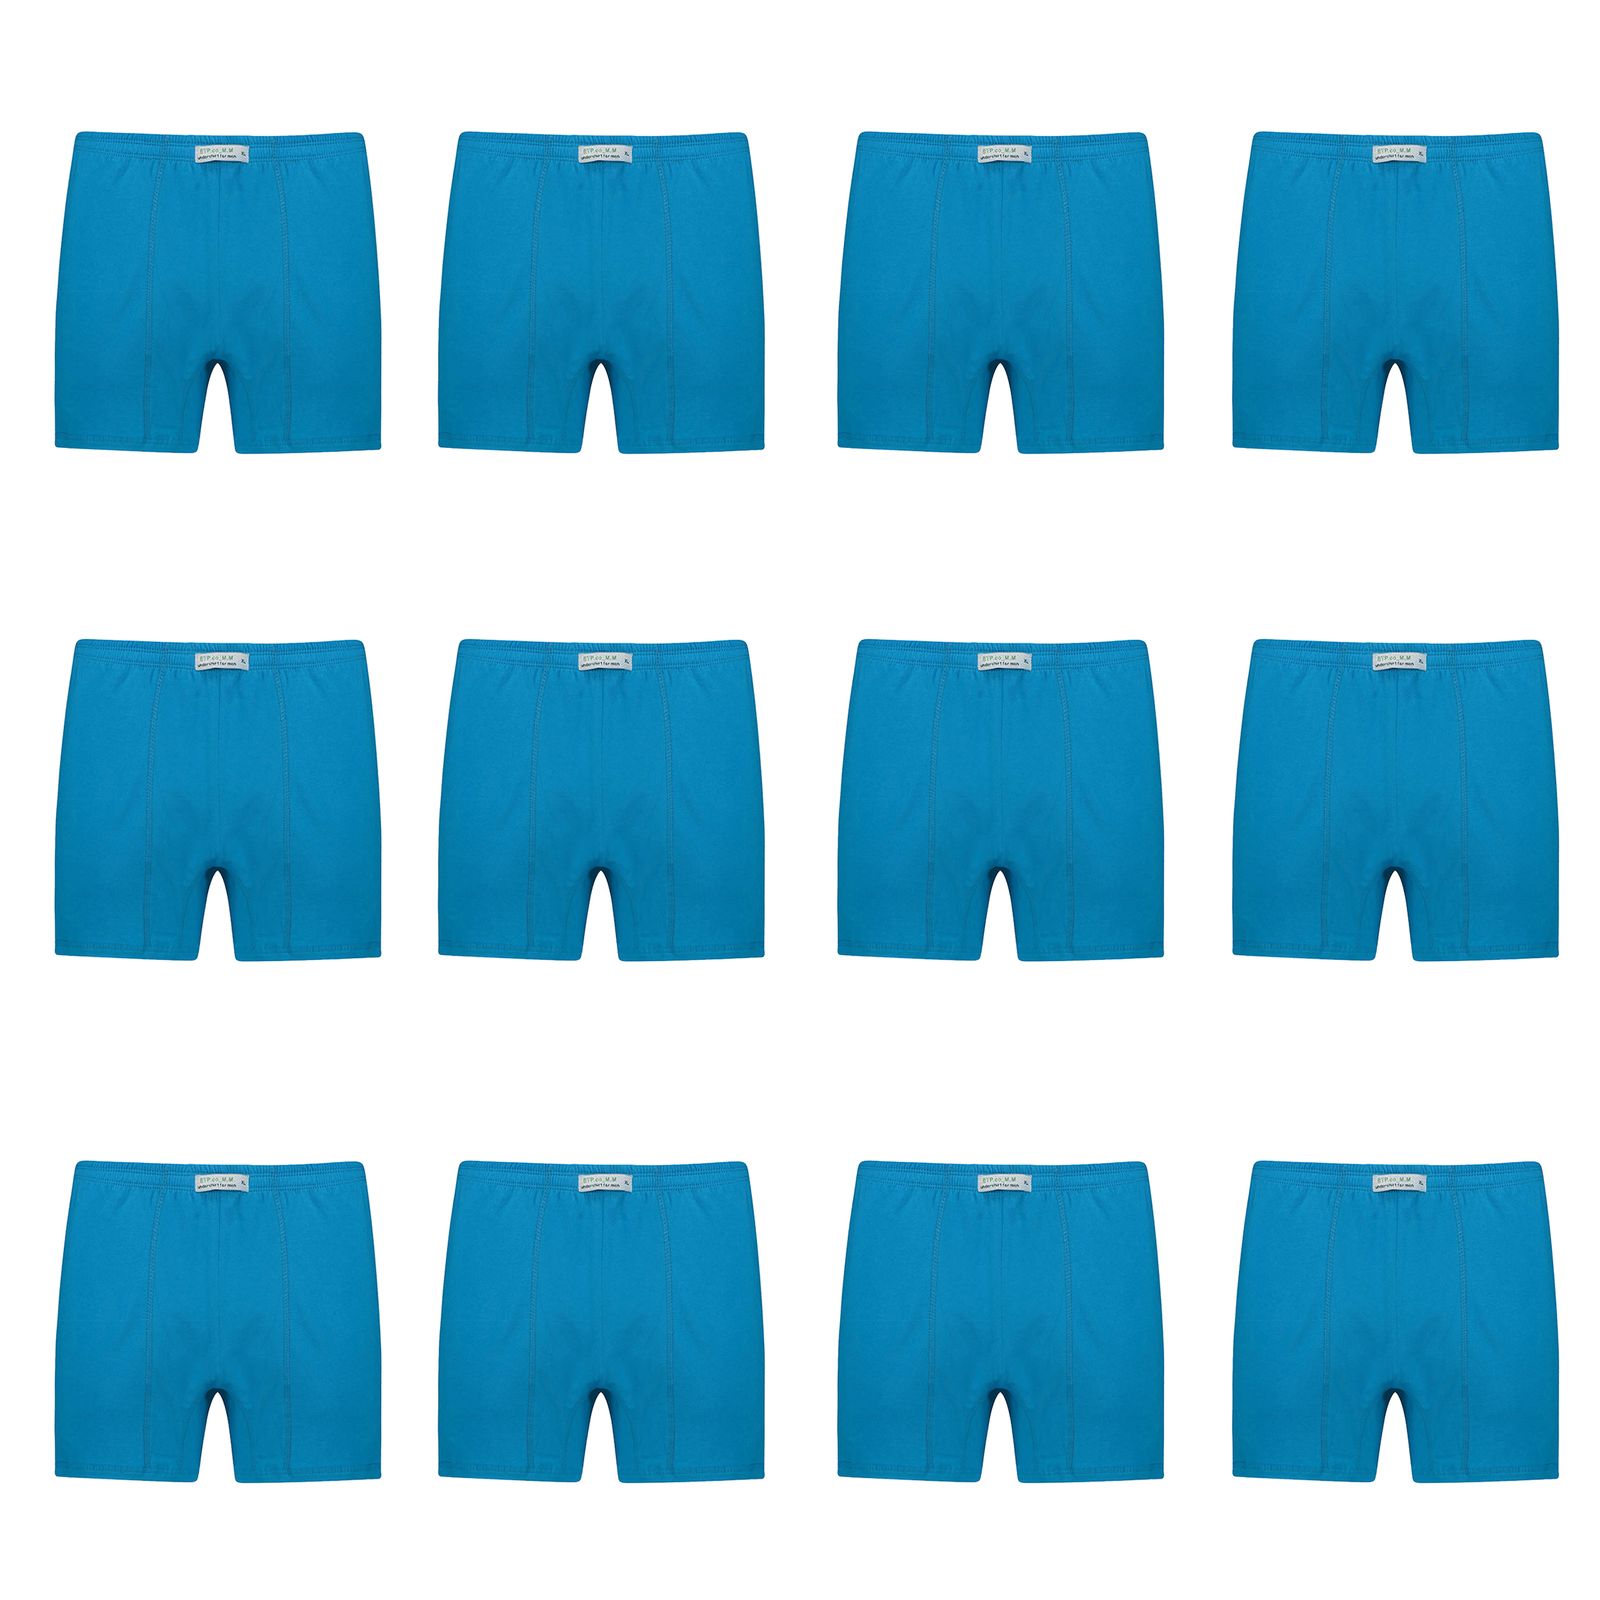 شورت پادار مردانه برهان تن پوش مدل 3-04 بسته 12 عددی رنگ آبی فیروزه ای